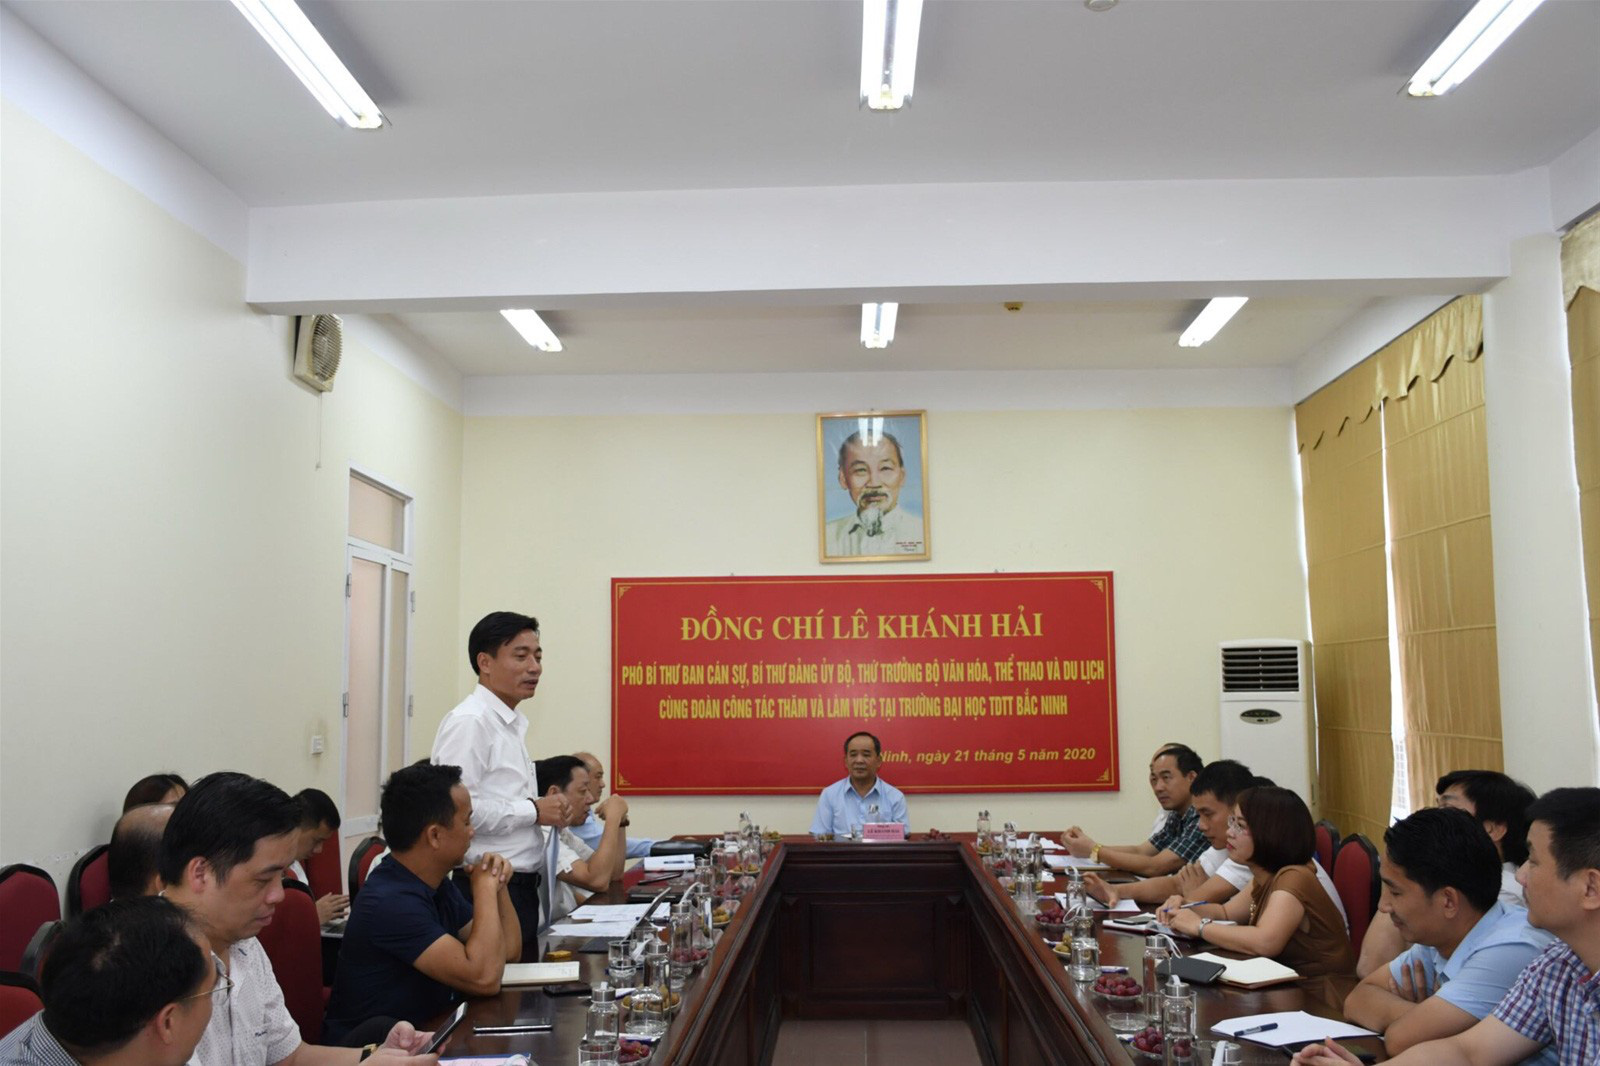 Thứ trưởng Lê Khánh Hải thăm và làm việc tại Trường Đại học TDTT Bắc Ninh - Ảnh 4.